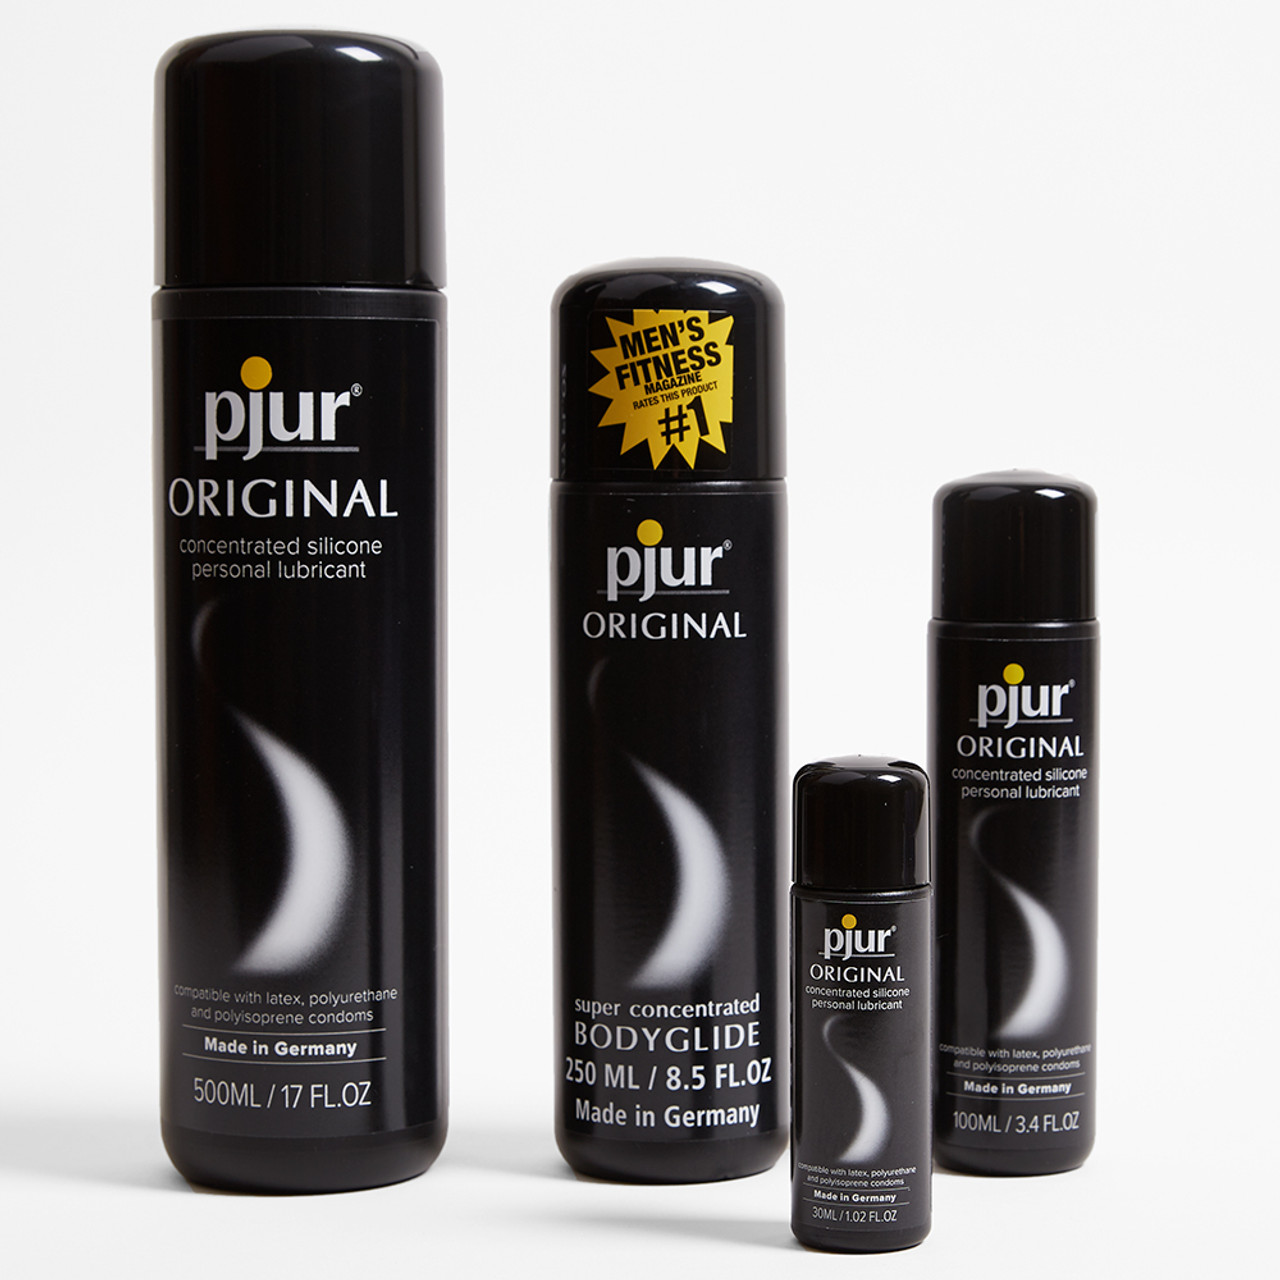 Pjur Original silicone lube in various sizes